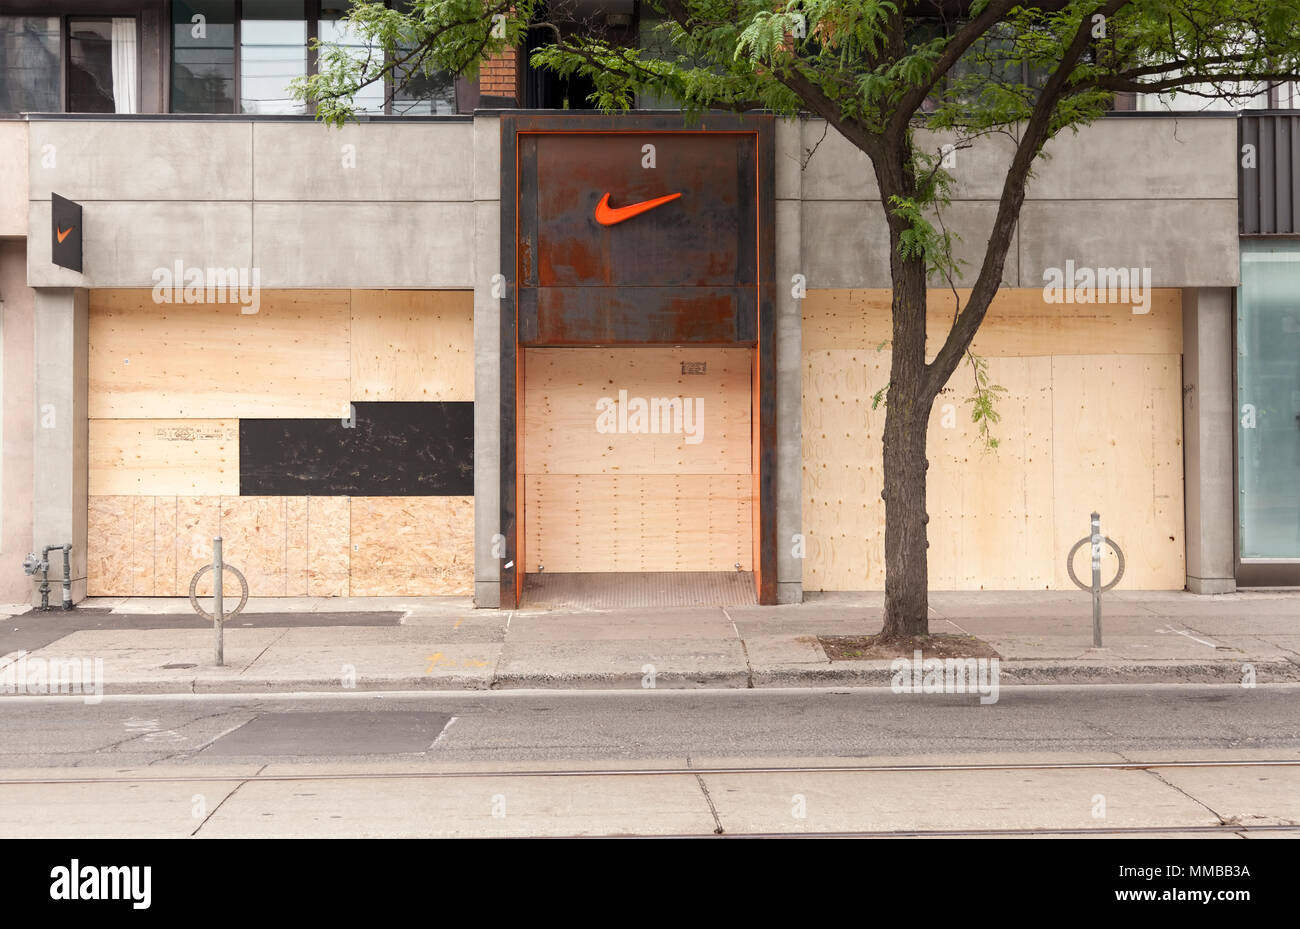 La boutique Nike avec barricadèrent windows pendant le sommet du G20 au centre-ville de Toronto, Ontario, Canada. Banque D'Images